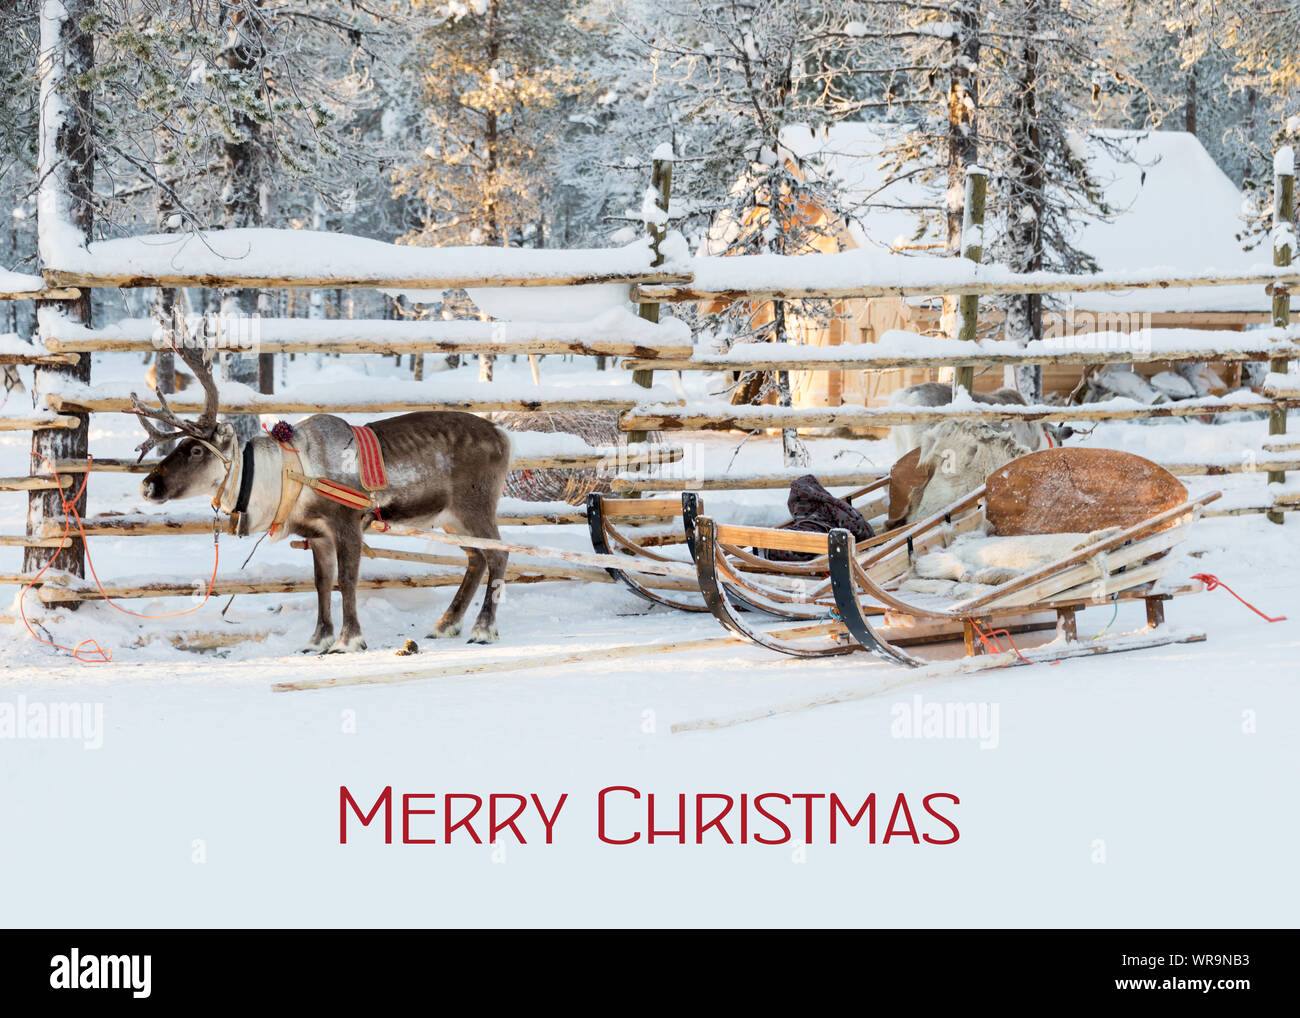 Carte de Noël, traîneau de rennes en attente de Santa en hiver, texte Joyeux Noël Banque D'Images